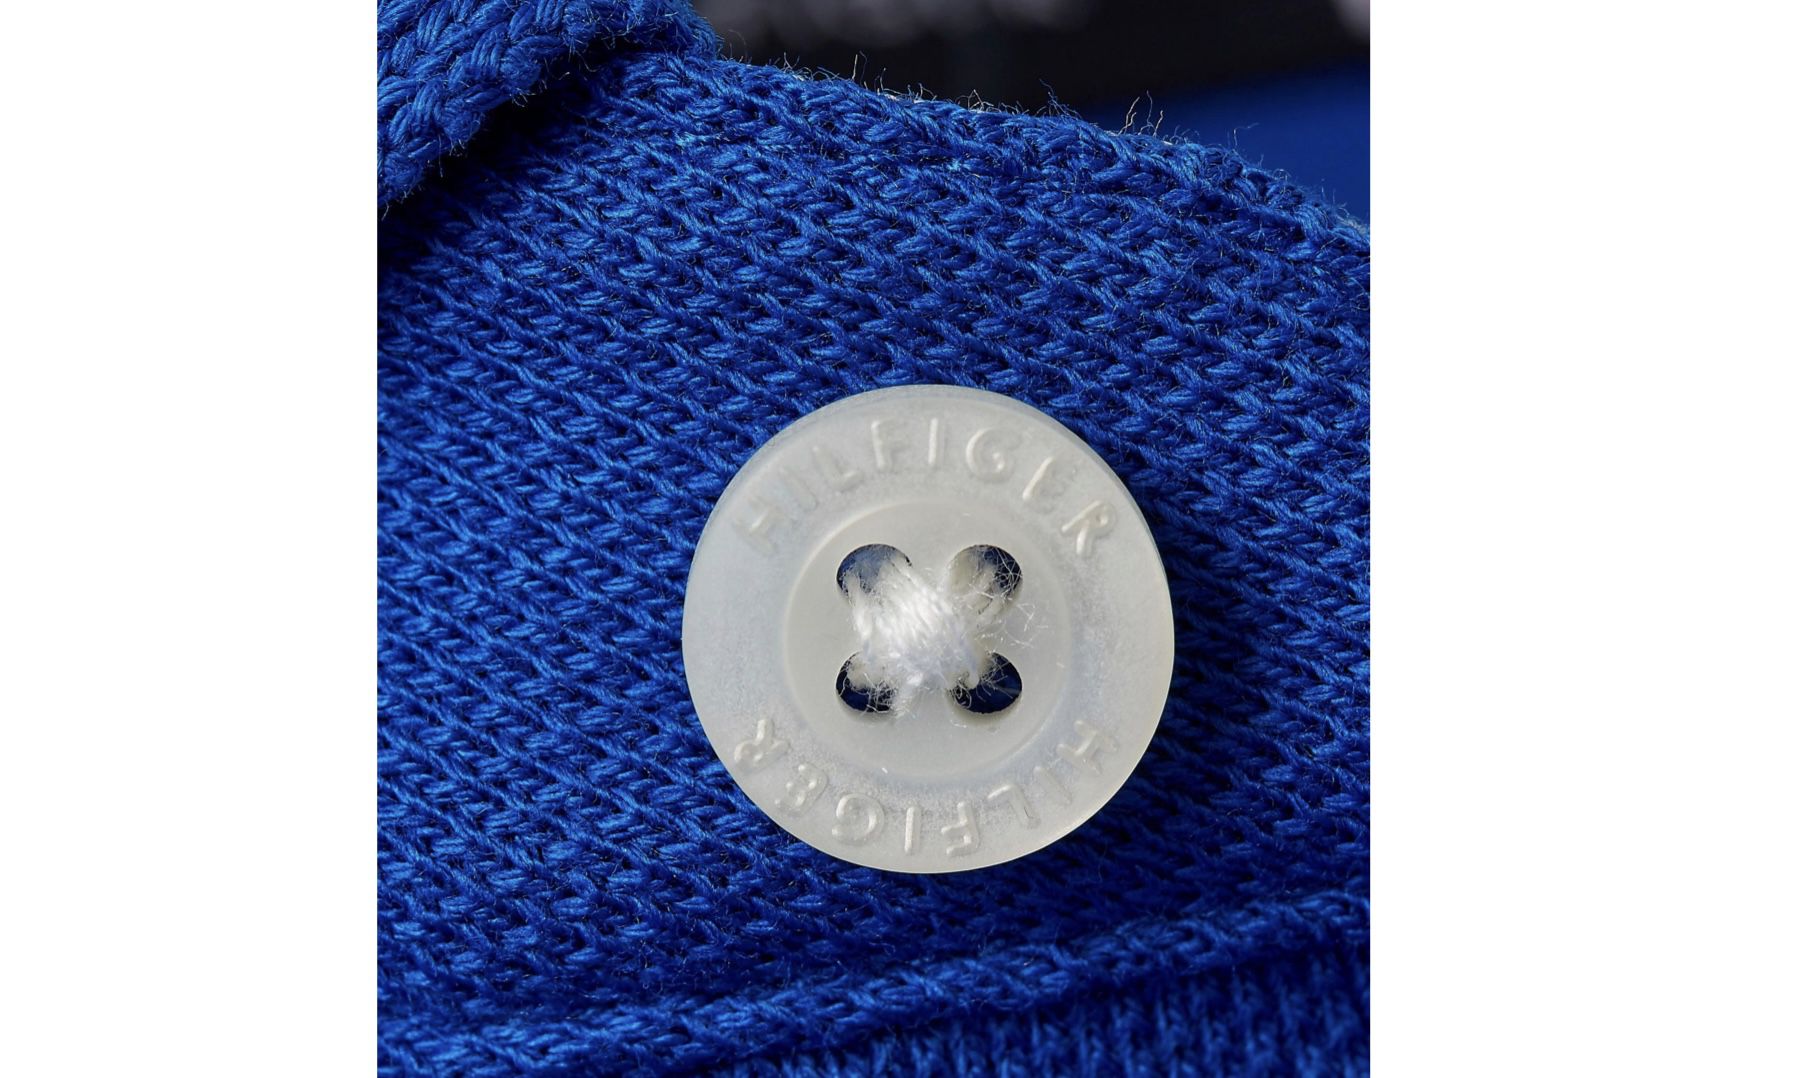 Tommy Hilfiger 1985 Regular Fit Poloshirt in Blau für 26,94€ (statt 51€)